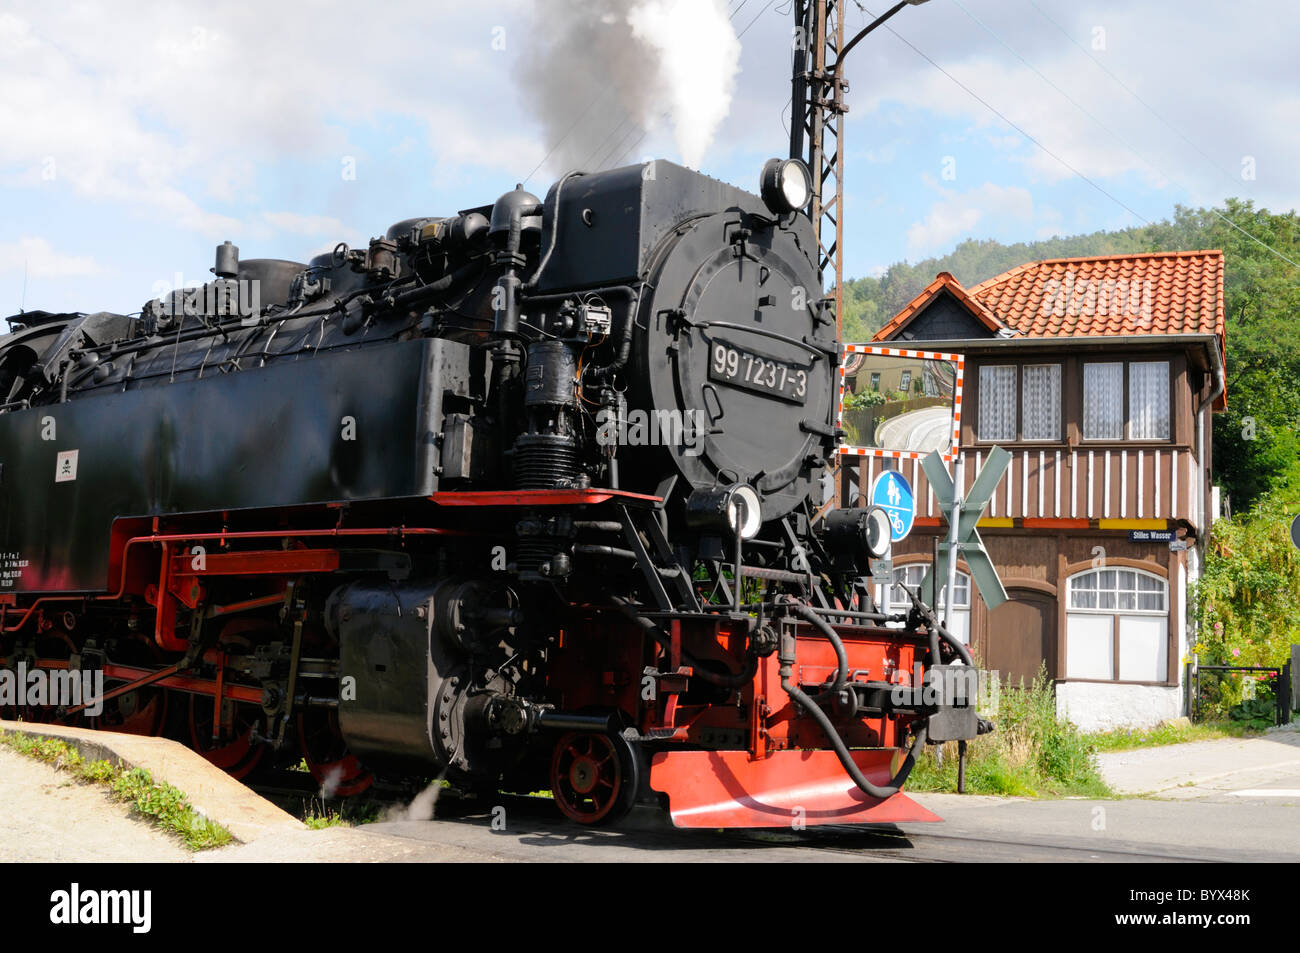 Dampflokomotive in Wernigerode, Sachsen-Anhalt, Deutschland. -Dampflokomotive in Wernigerode, Sachsen-Anhalt, Deutschland. Stockfoto